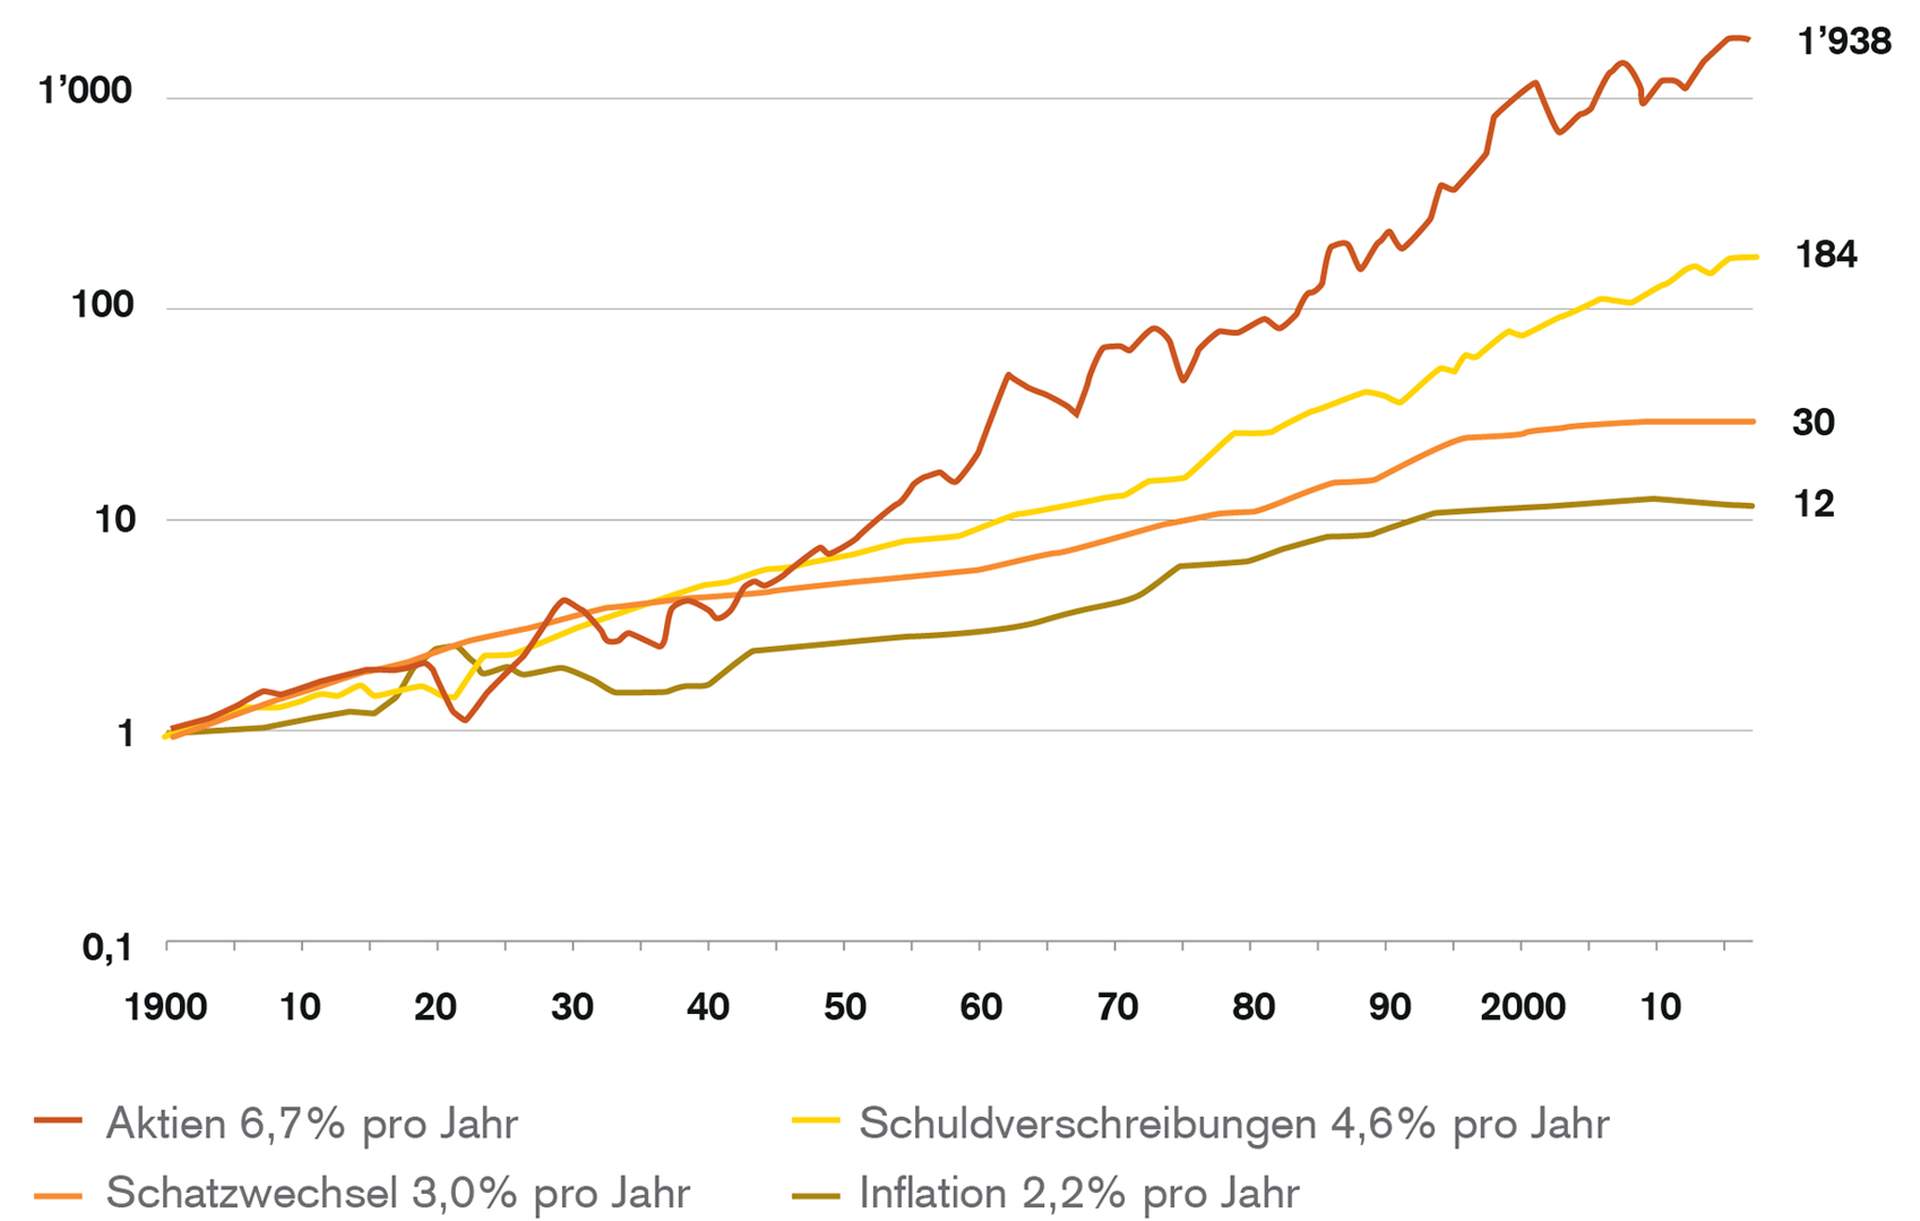 Schweizer Aktien sind seit 1900 um den Faktor 1938x im Wert gestiegen